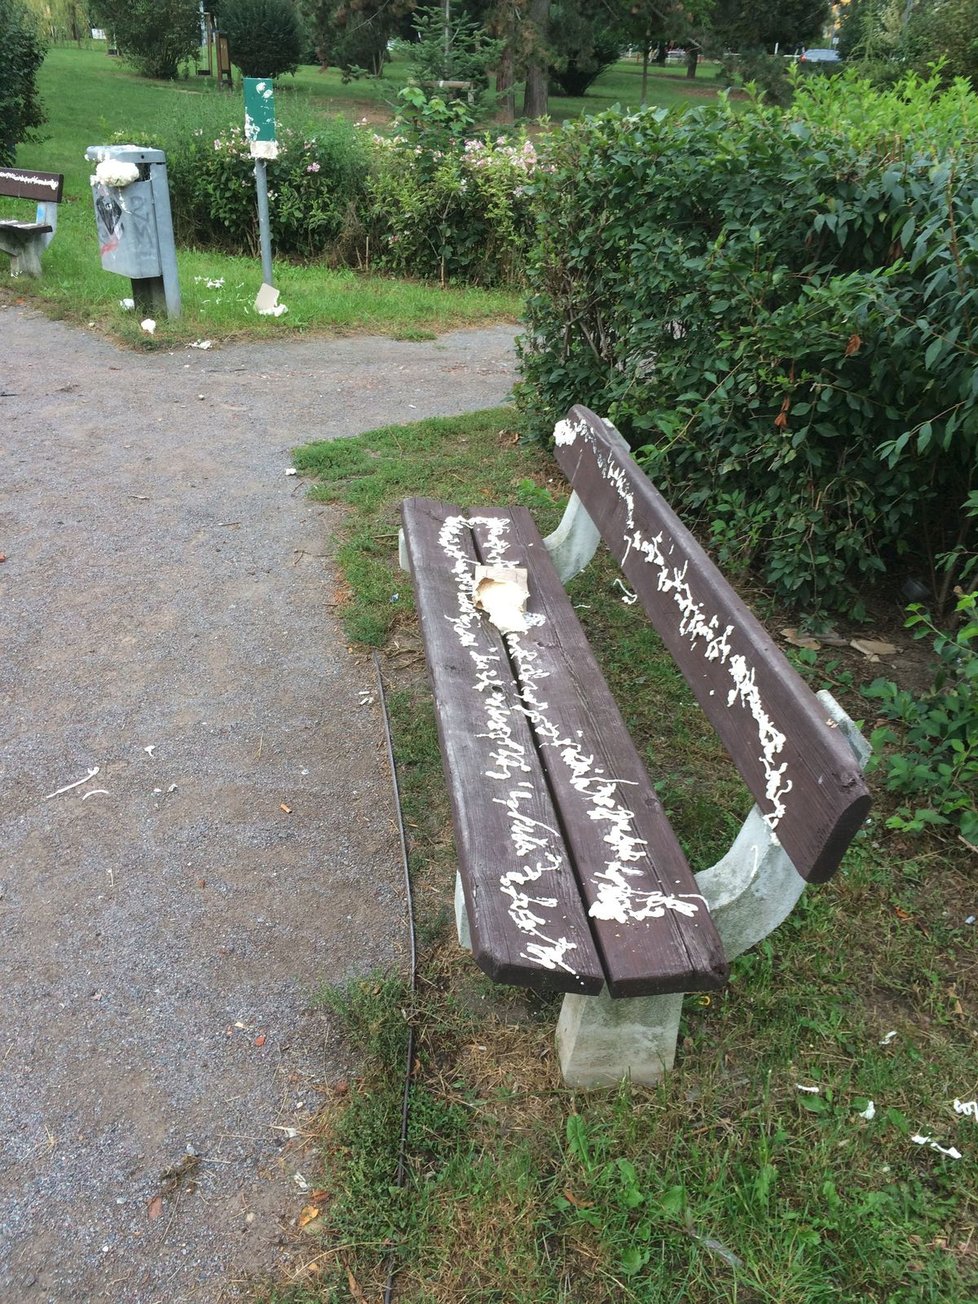 Neznámý vandal zdevastoval mobiliář v jednom z parků v Horních Počernicích montážní pěnou. Stalo se tak 1. zářijový týden.